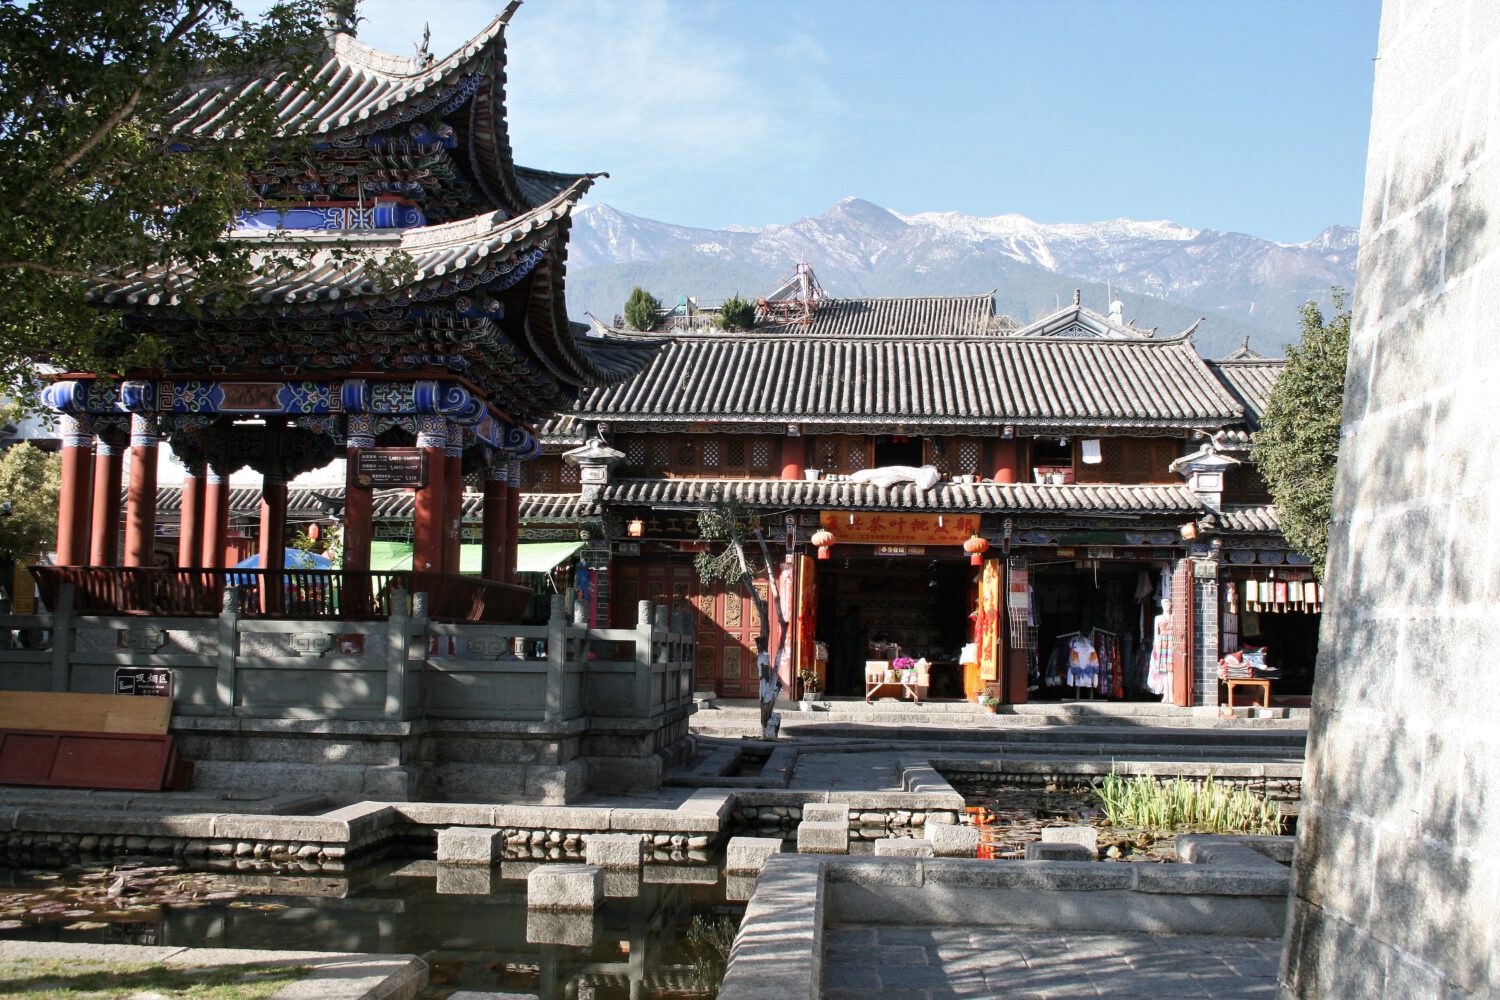 Yunnan Highlights China